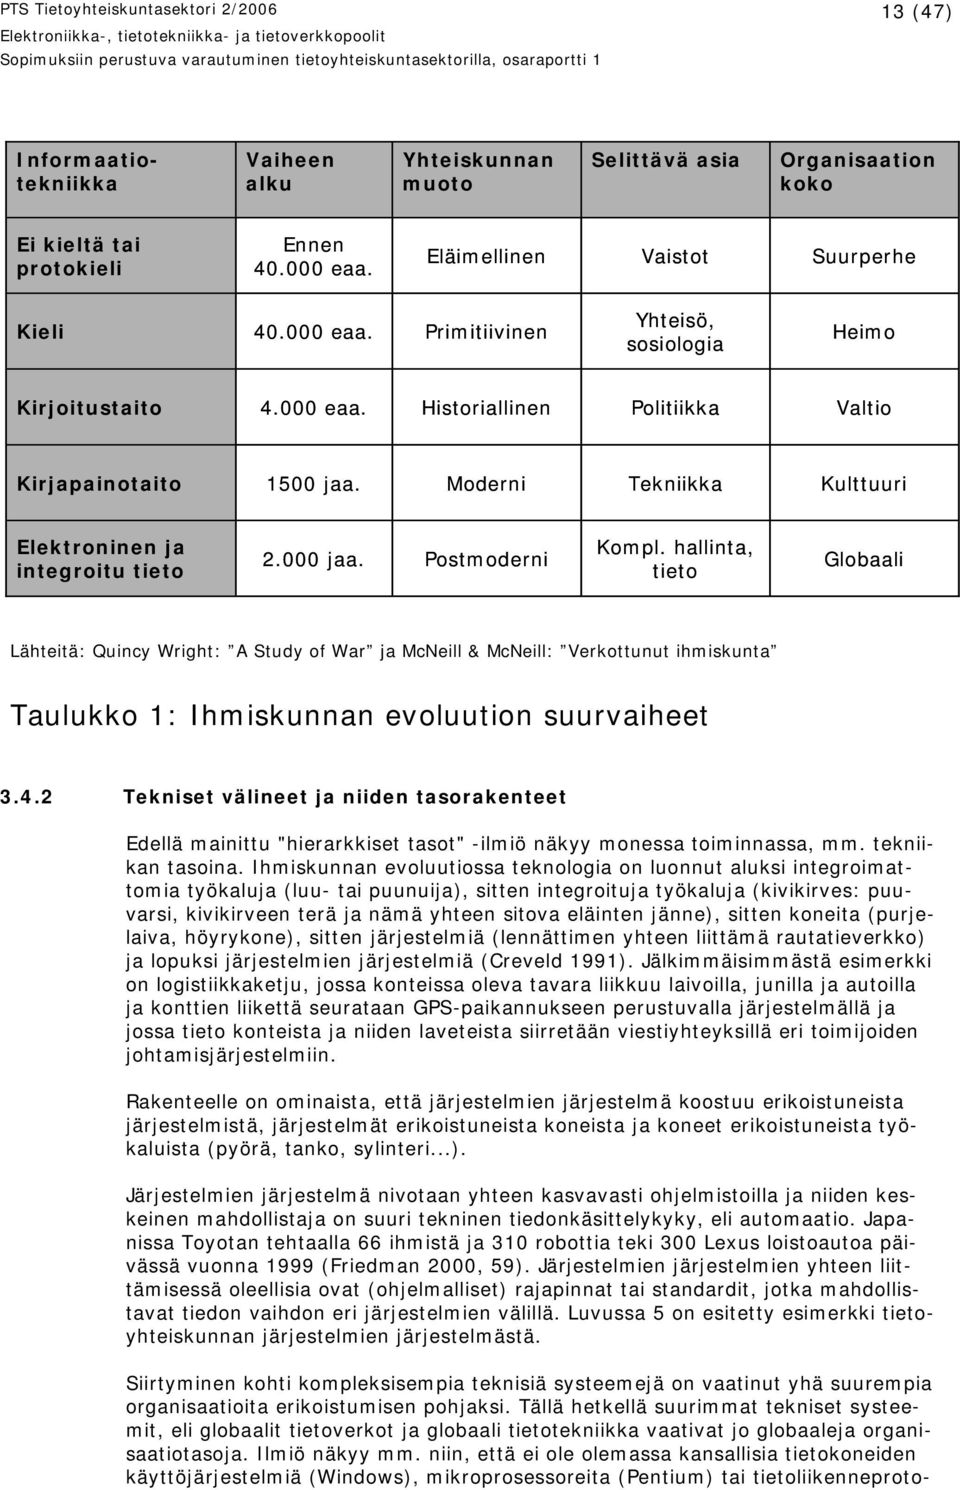 Moderni Tekniikka Kulttuuri Elektroninen ja integroitu tieto 2.000 jaa. Postmoderni Kompl.